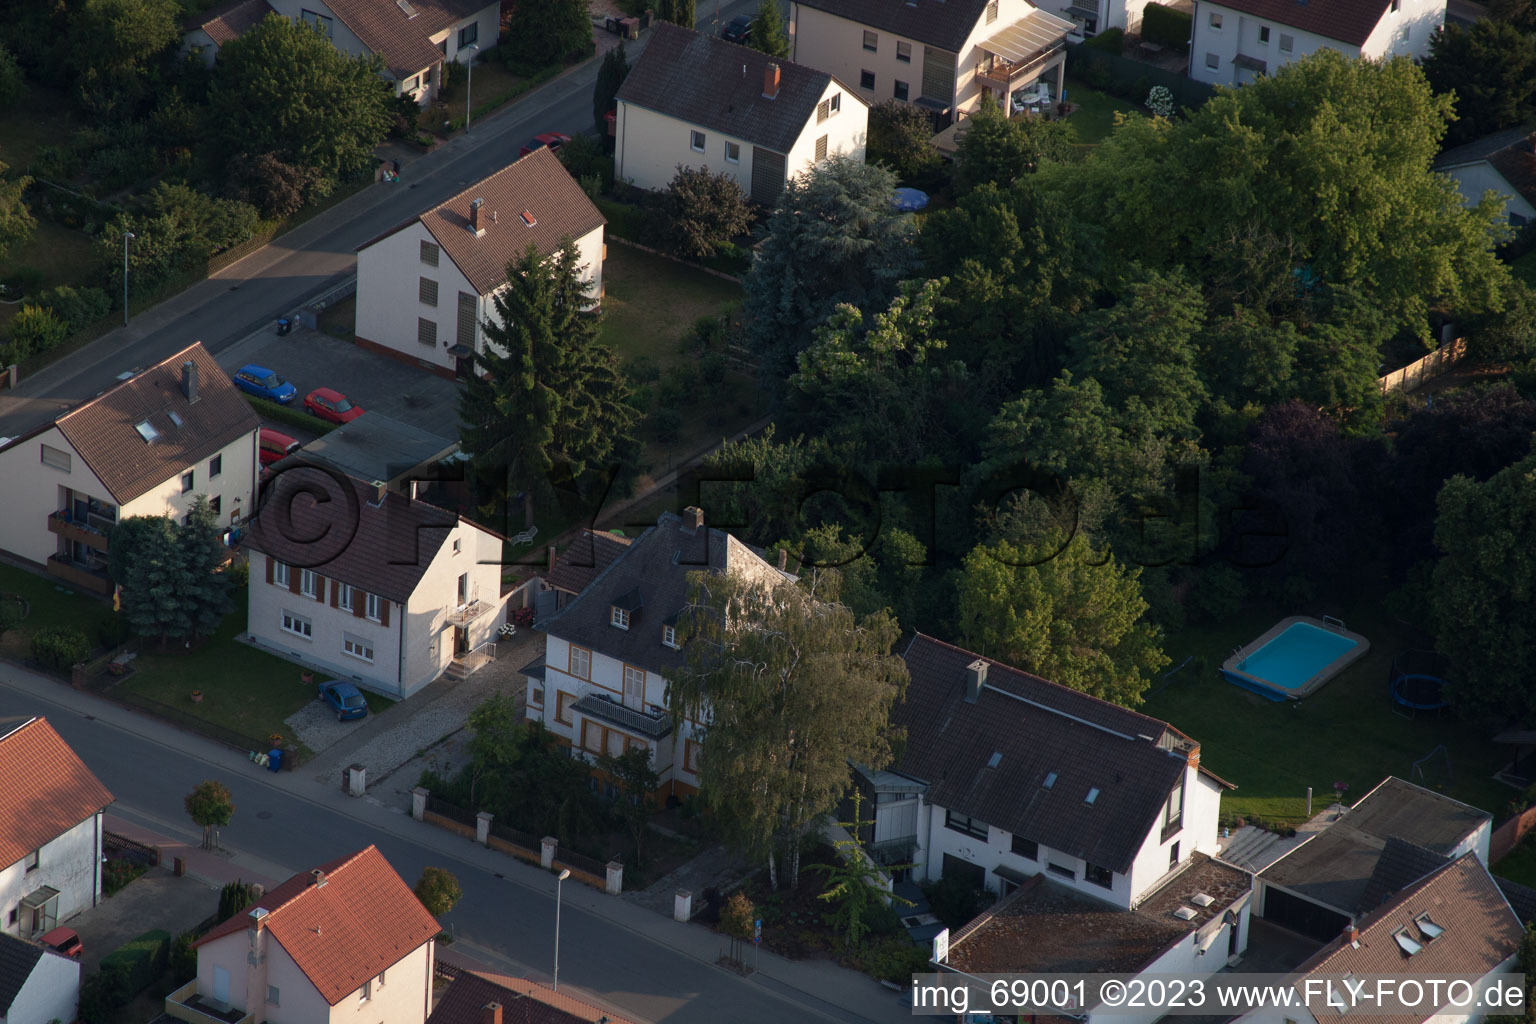 Oblique view of District Dannstadt in Dannstadt-Schauernheim in the state Rhineland-Palatinate, Germany